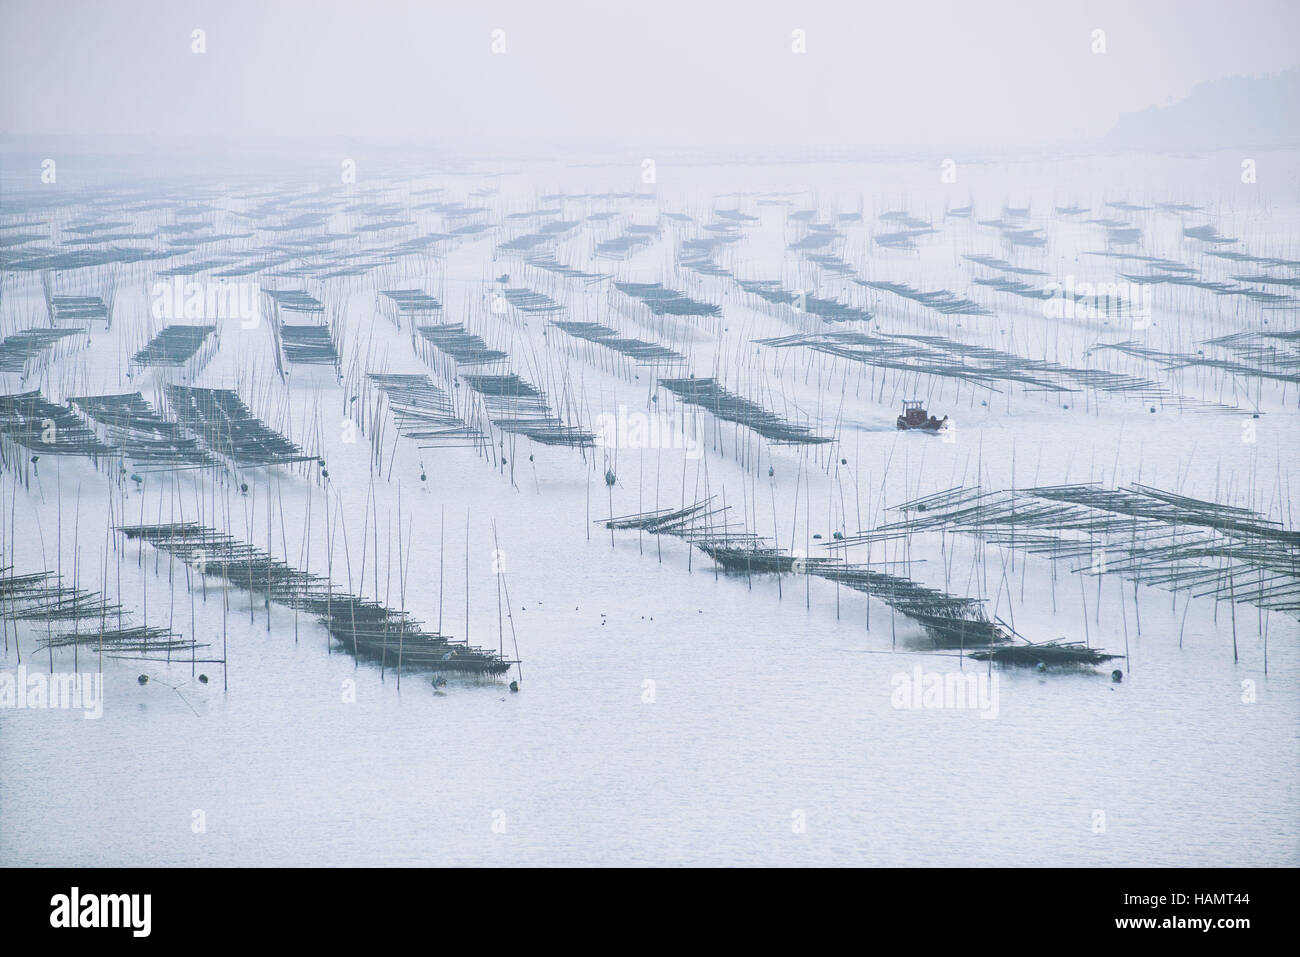 (161202) -- WENLING, 2 décembre 2016 (Xinhua) -- la récolte des cultivateurs des algues au large de la côte de la Chine orientale Wenling, dans la province du Zhejiang, le 1 décembre 2016. (Xinhua/Funian Dai) (2004) Banque D'Images